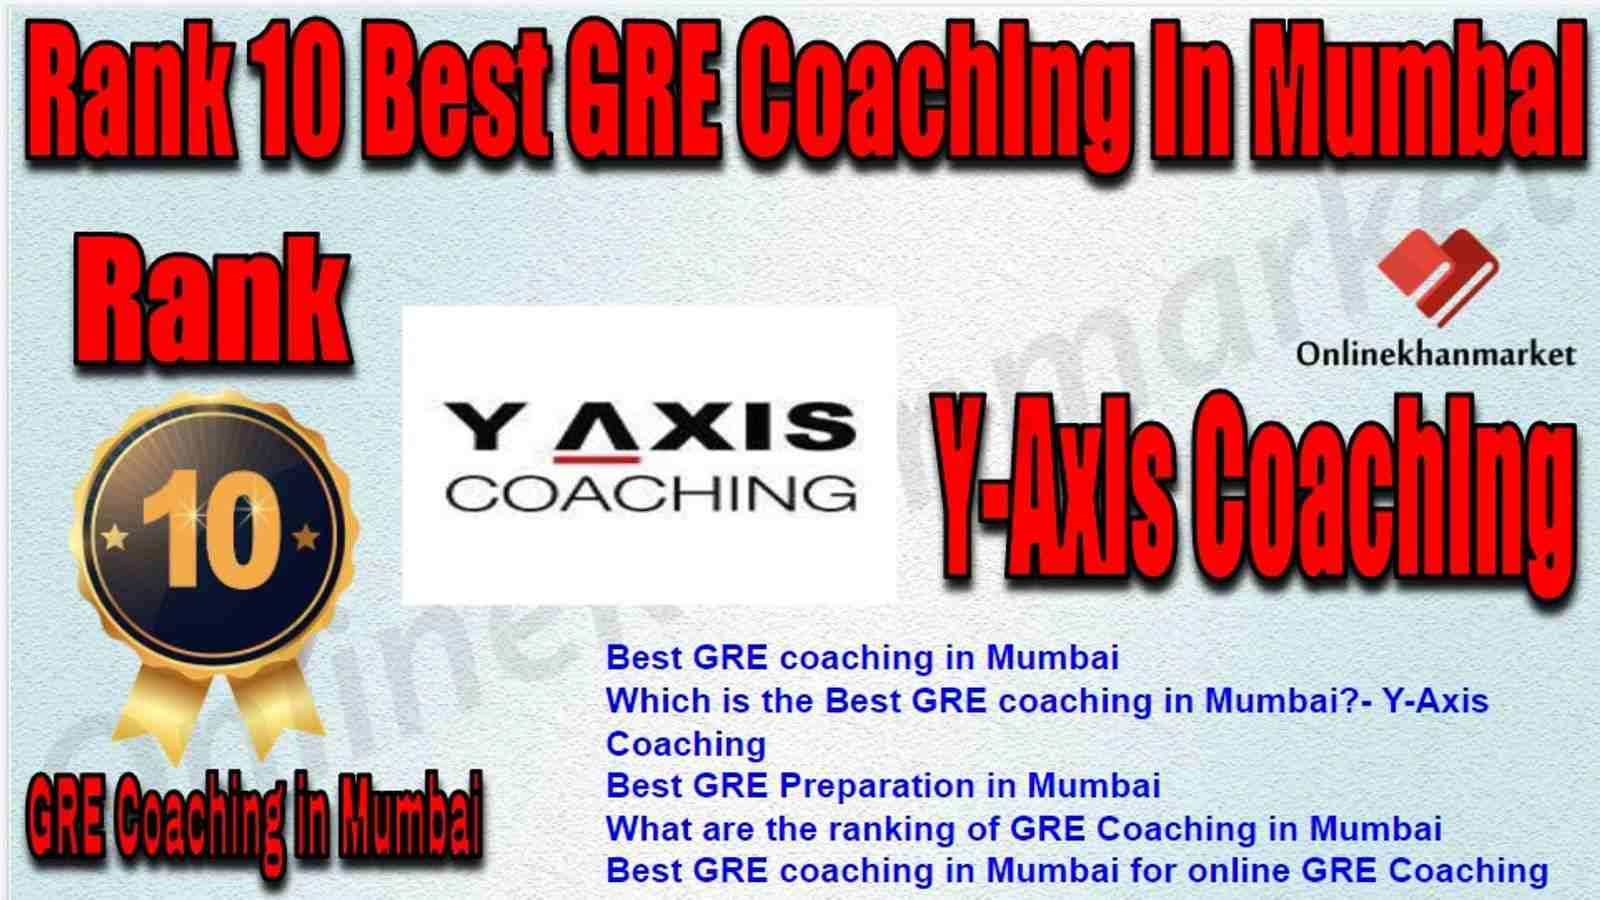 Rank 10 Best GRE Coaching in Mumbai